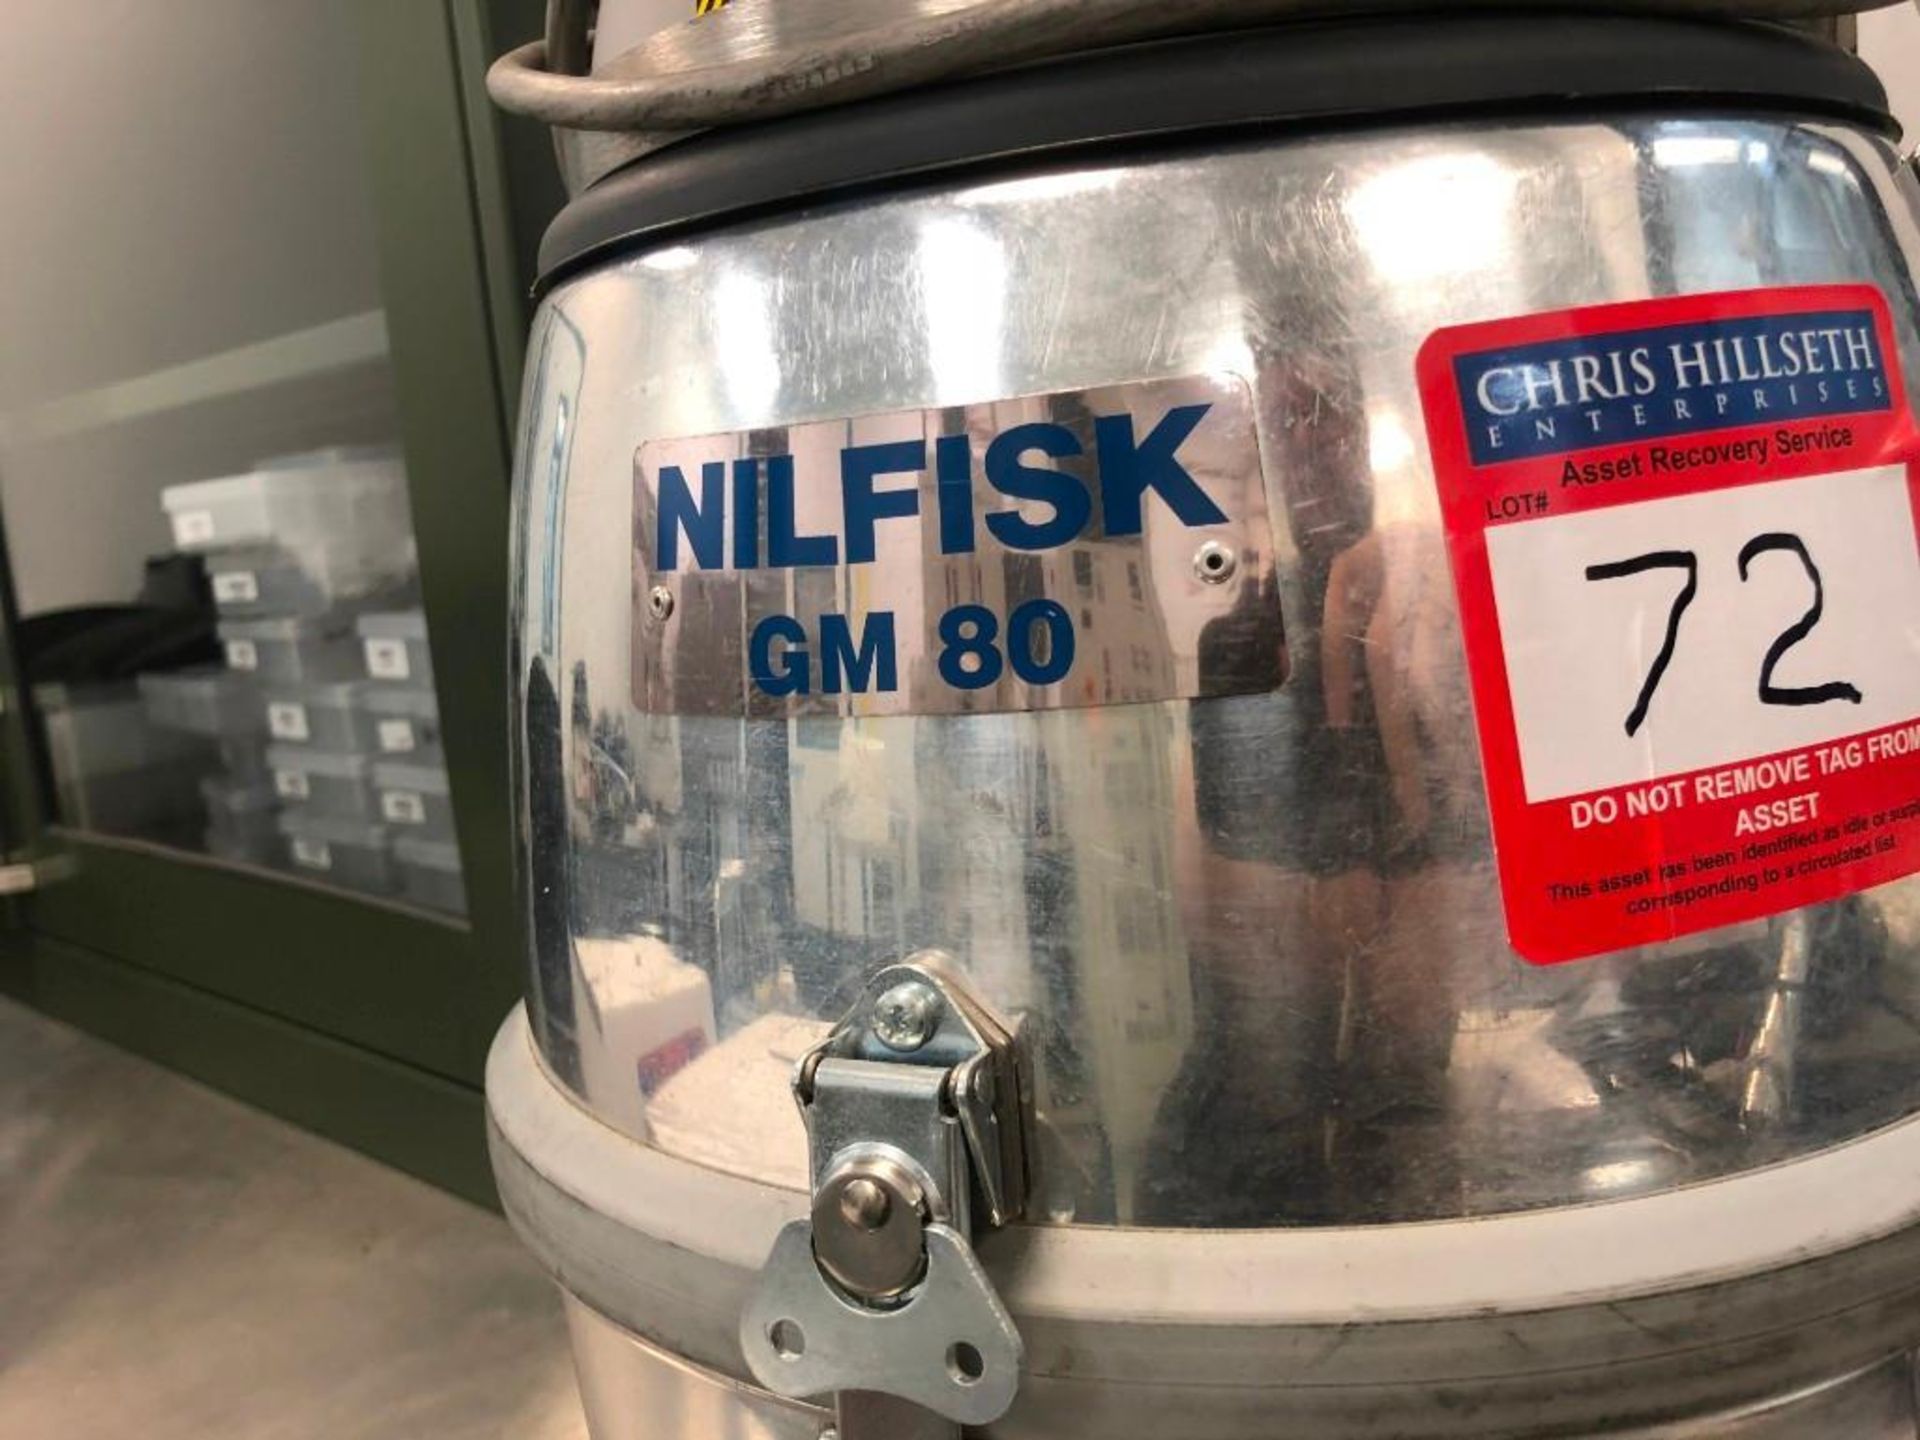 Nilfisk GM 80 - Image 3 of 3